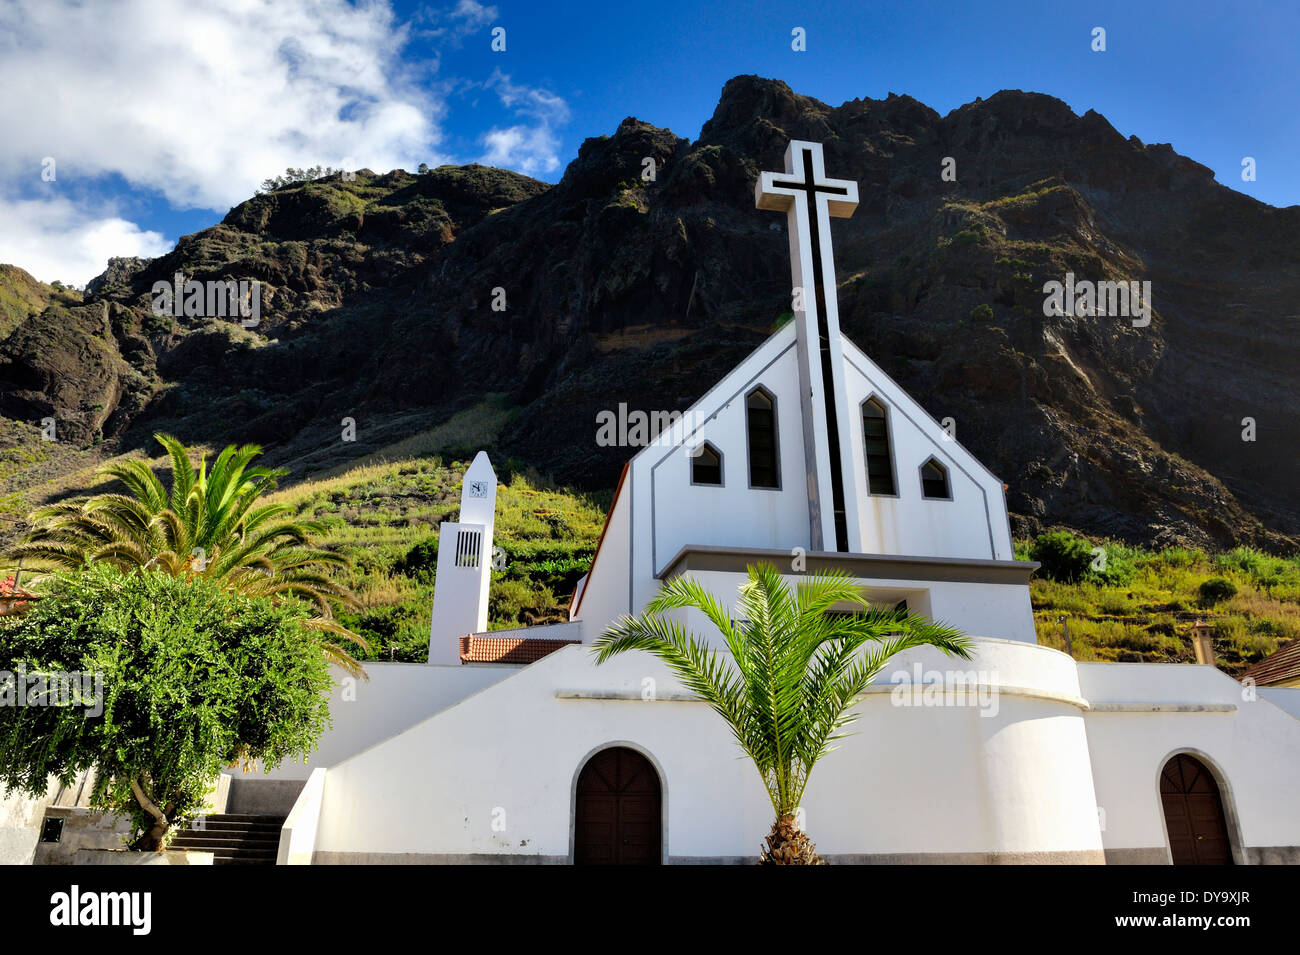 Madeira Portogallo.La chiesa in località costiera di Paul do ma Foto Stock